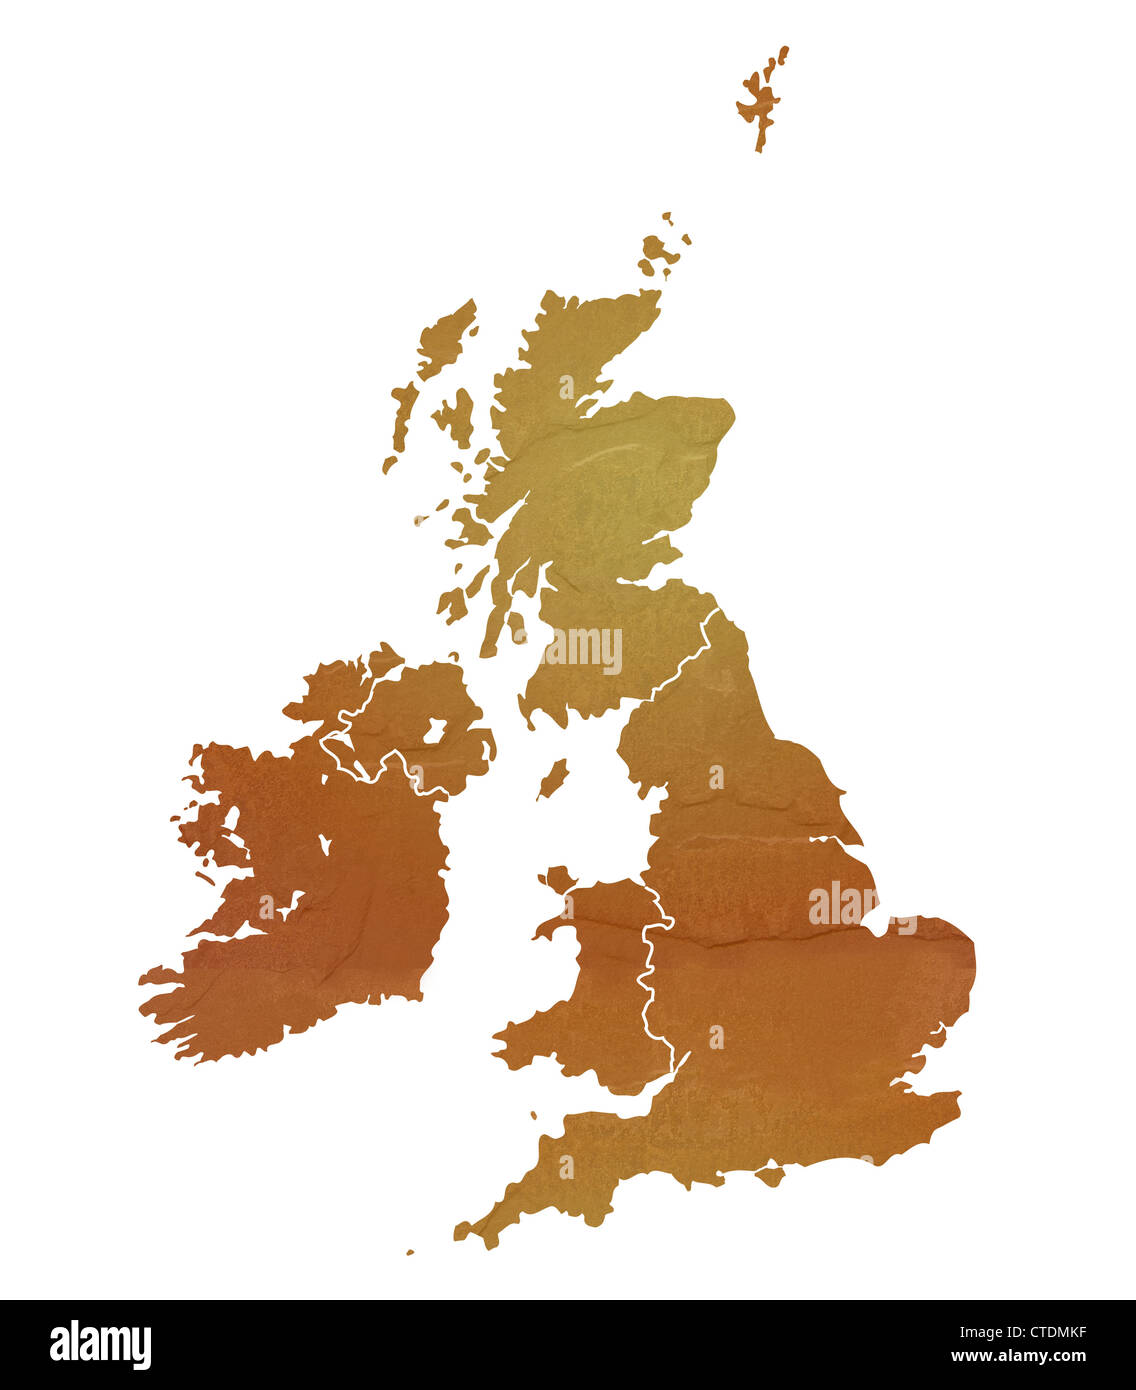 Vereinigtes Königreich-Karte mit braunen Felsen oder Stein Textur, isoliert auf weißem Hintergrund mit Beschneidungspfad. Stockfoto